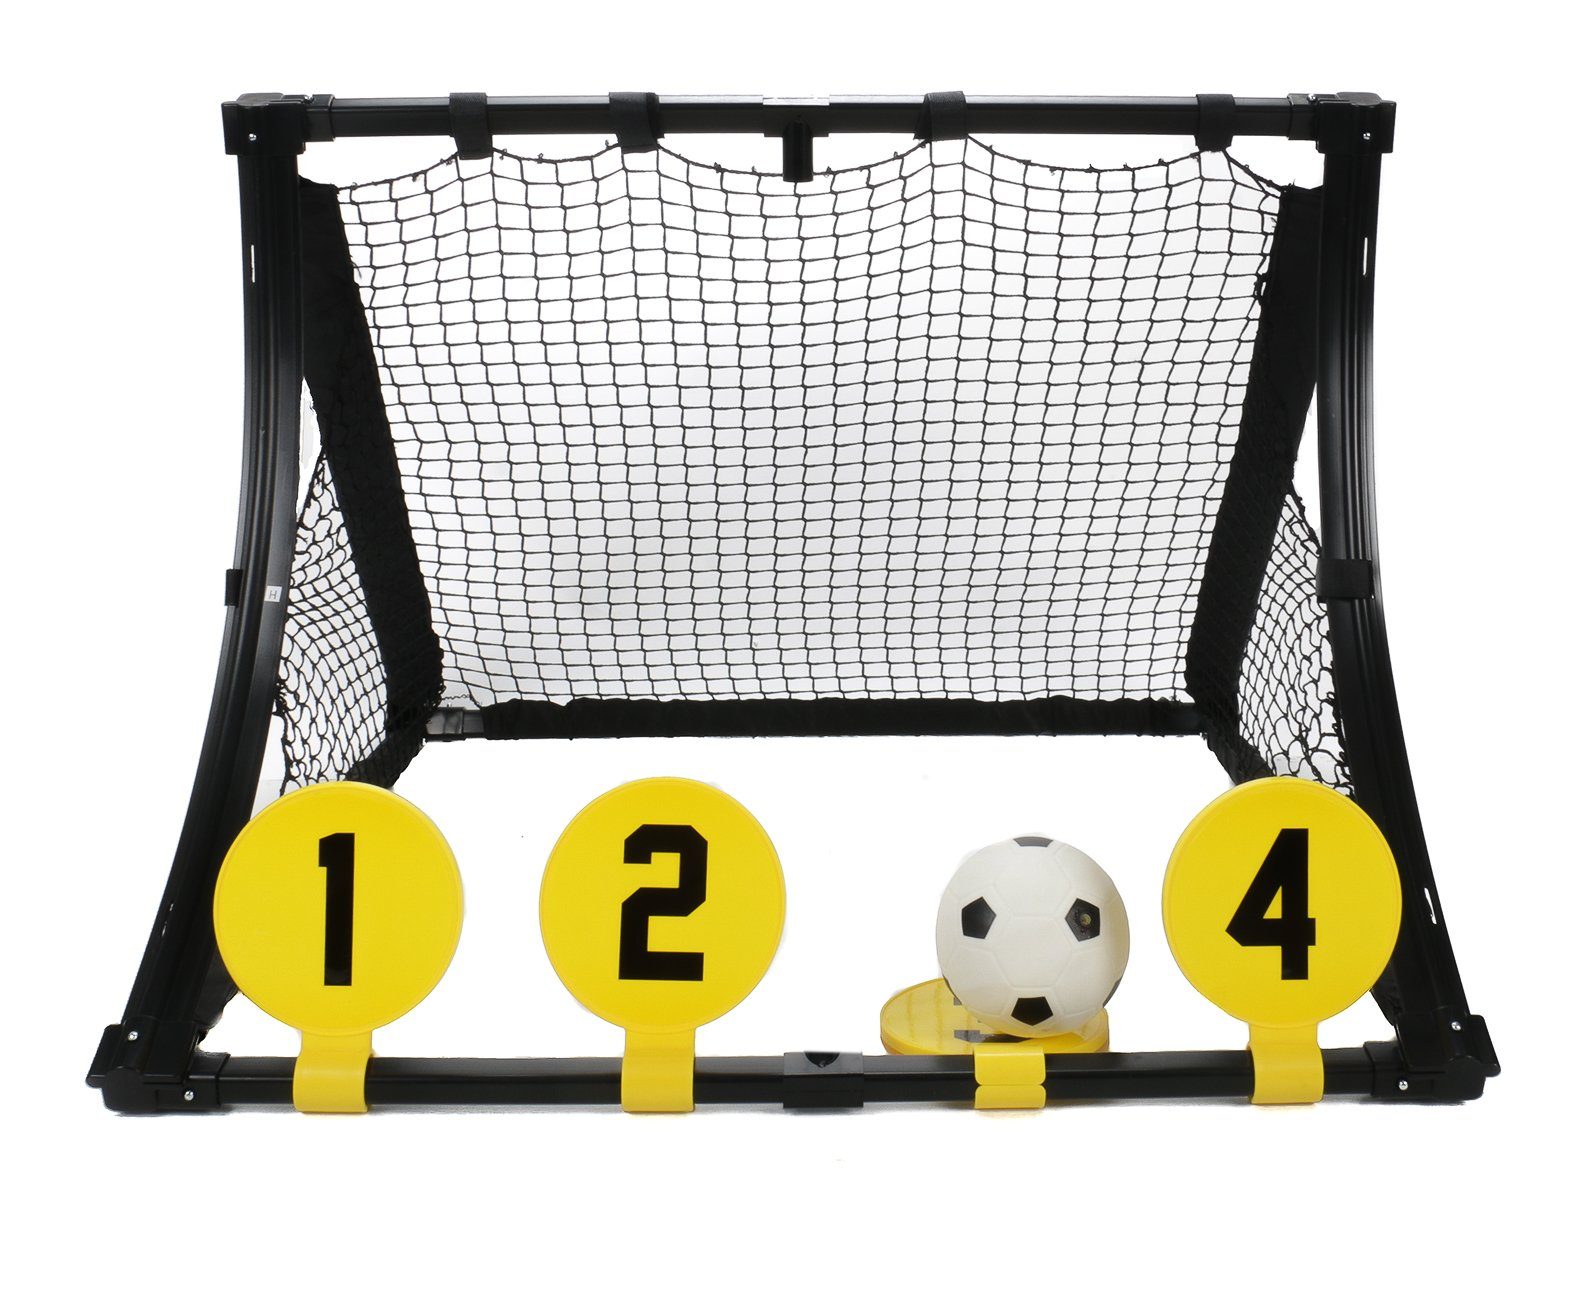 Dunlop Fußballtor 4-in-1 Fußballtrainingscenter für Kinder mit Ball ( Fussballtor mit Rebound-Platte, 4 Zielscheiben, Ballpumpe mit Adapter),  leichte Steck-Klick-Montage, Heringe, Größe ca. 75 x 58 x 79 cm